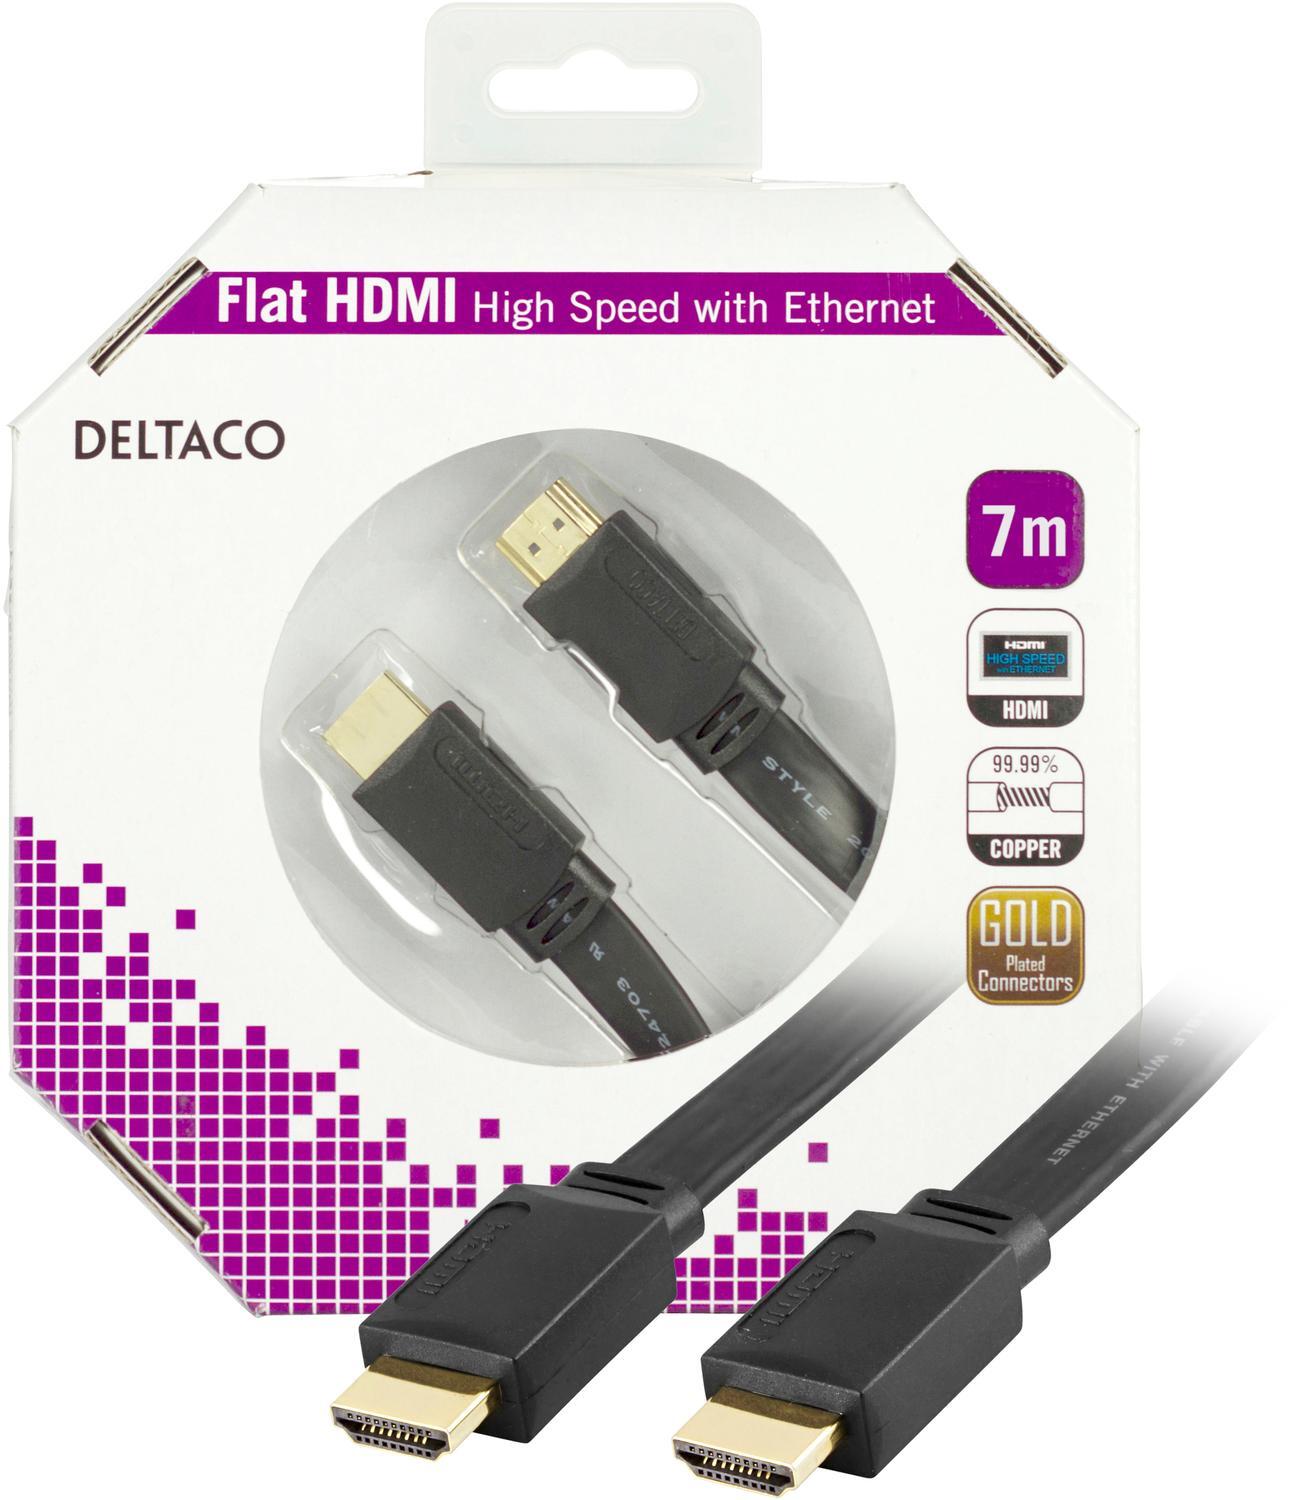 DELTACO fladt HDMI-kabel, HDMI High Speed med Ethernet, 4K, 7m, sort |  Elgiganten